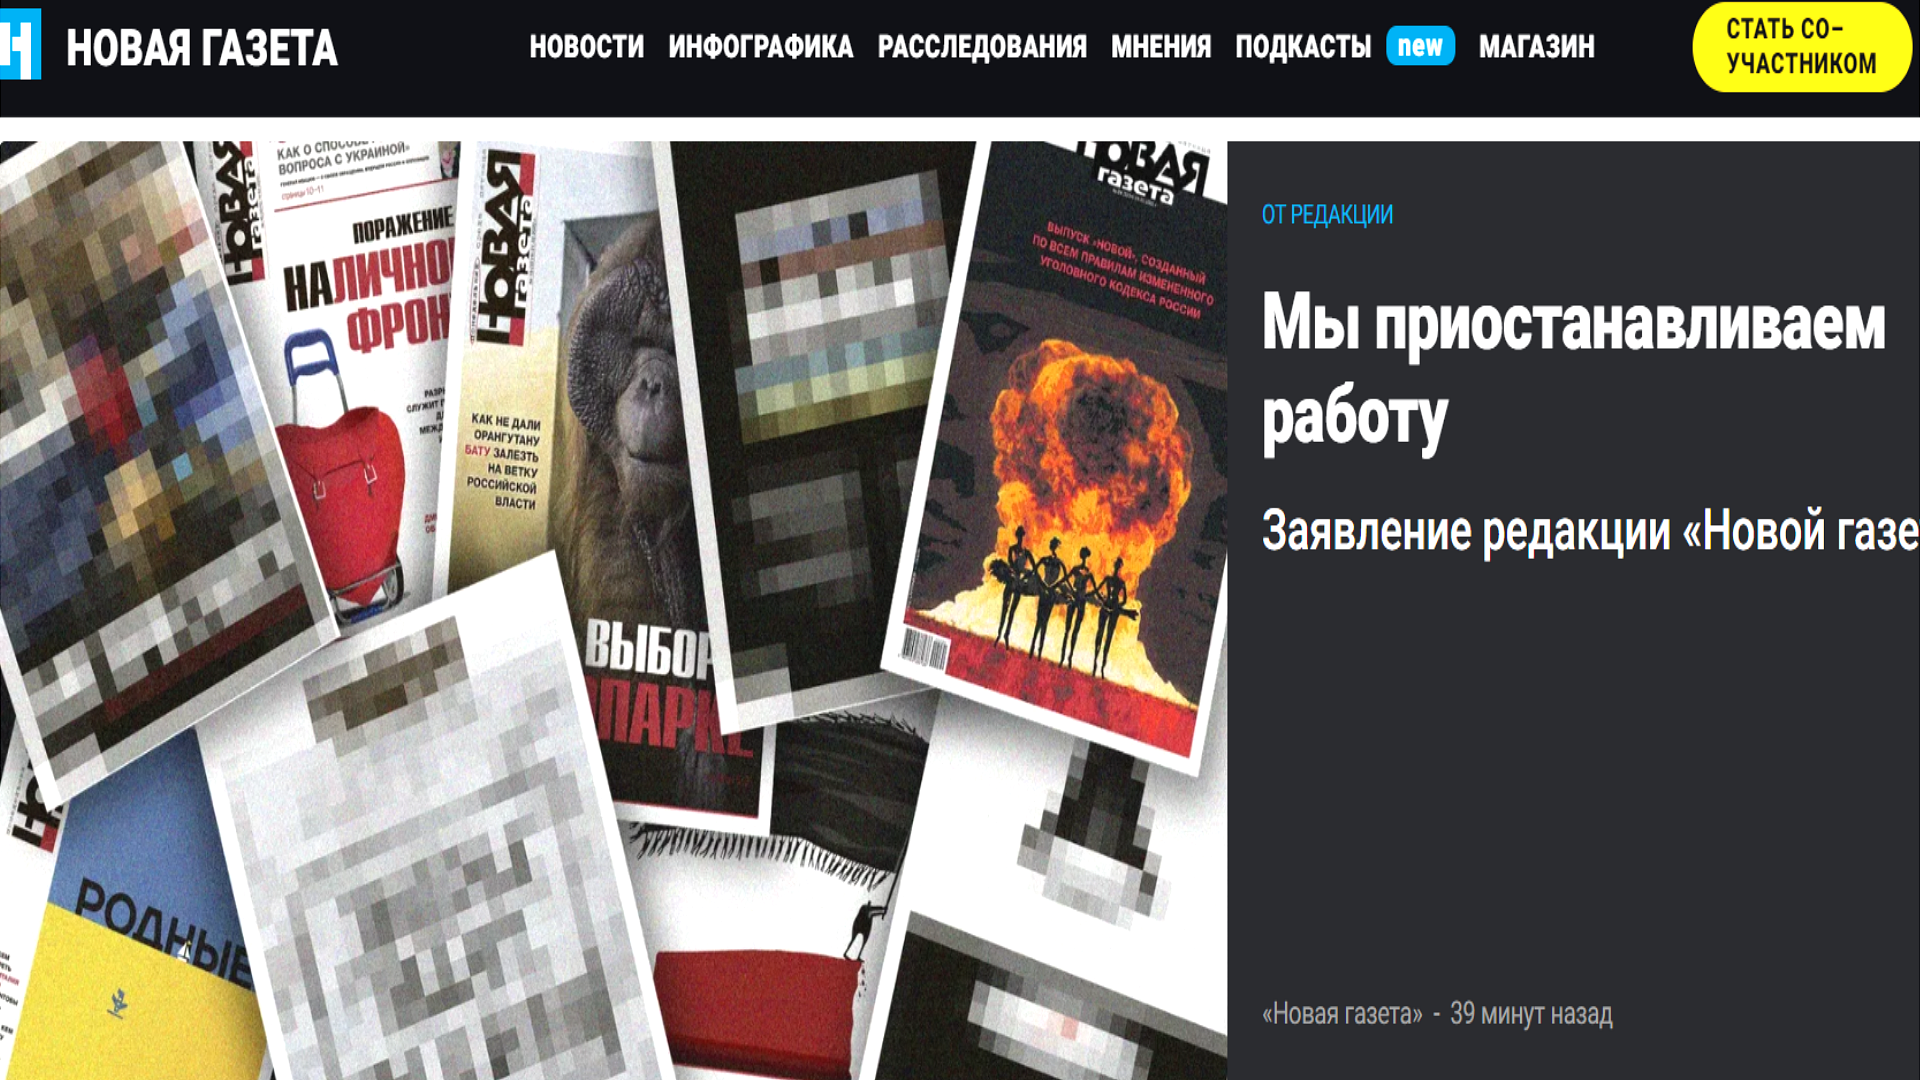 Работа для Вас Москва газета - вакансии работодателей